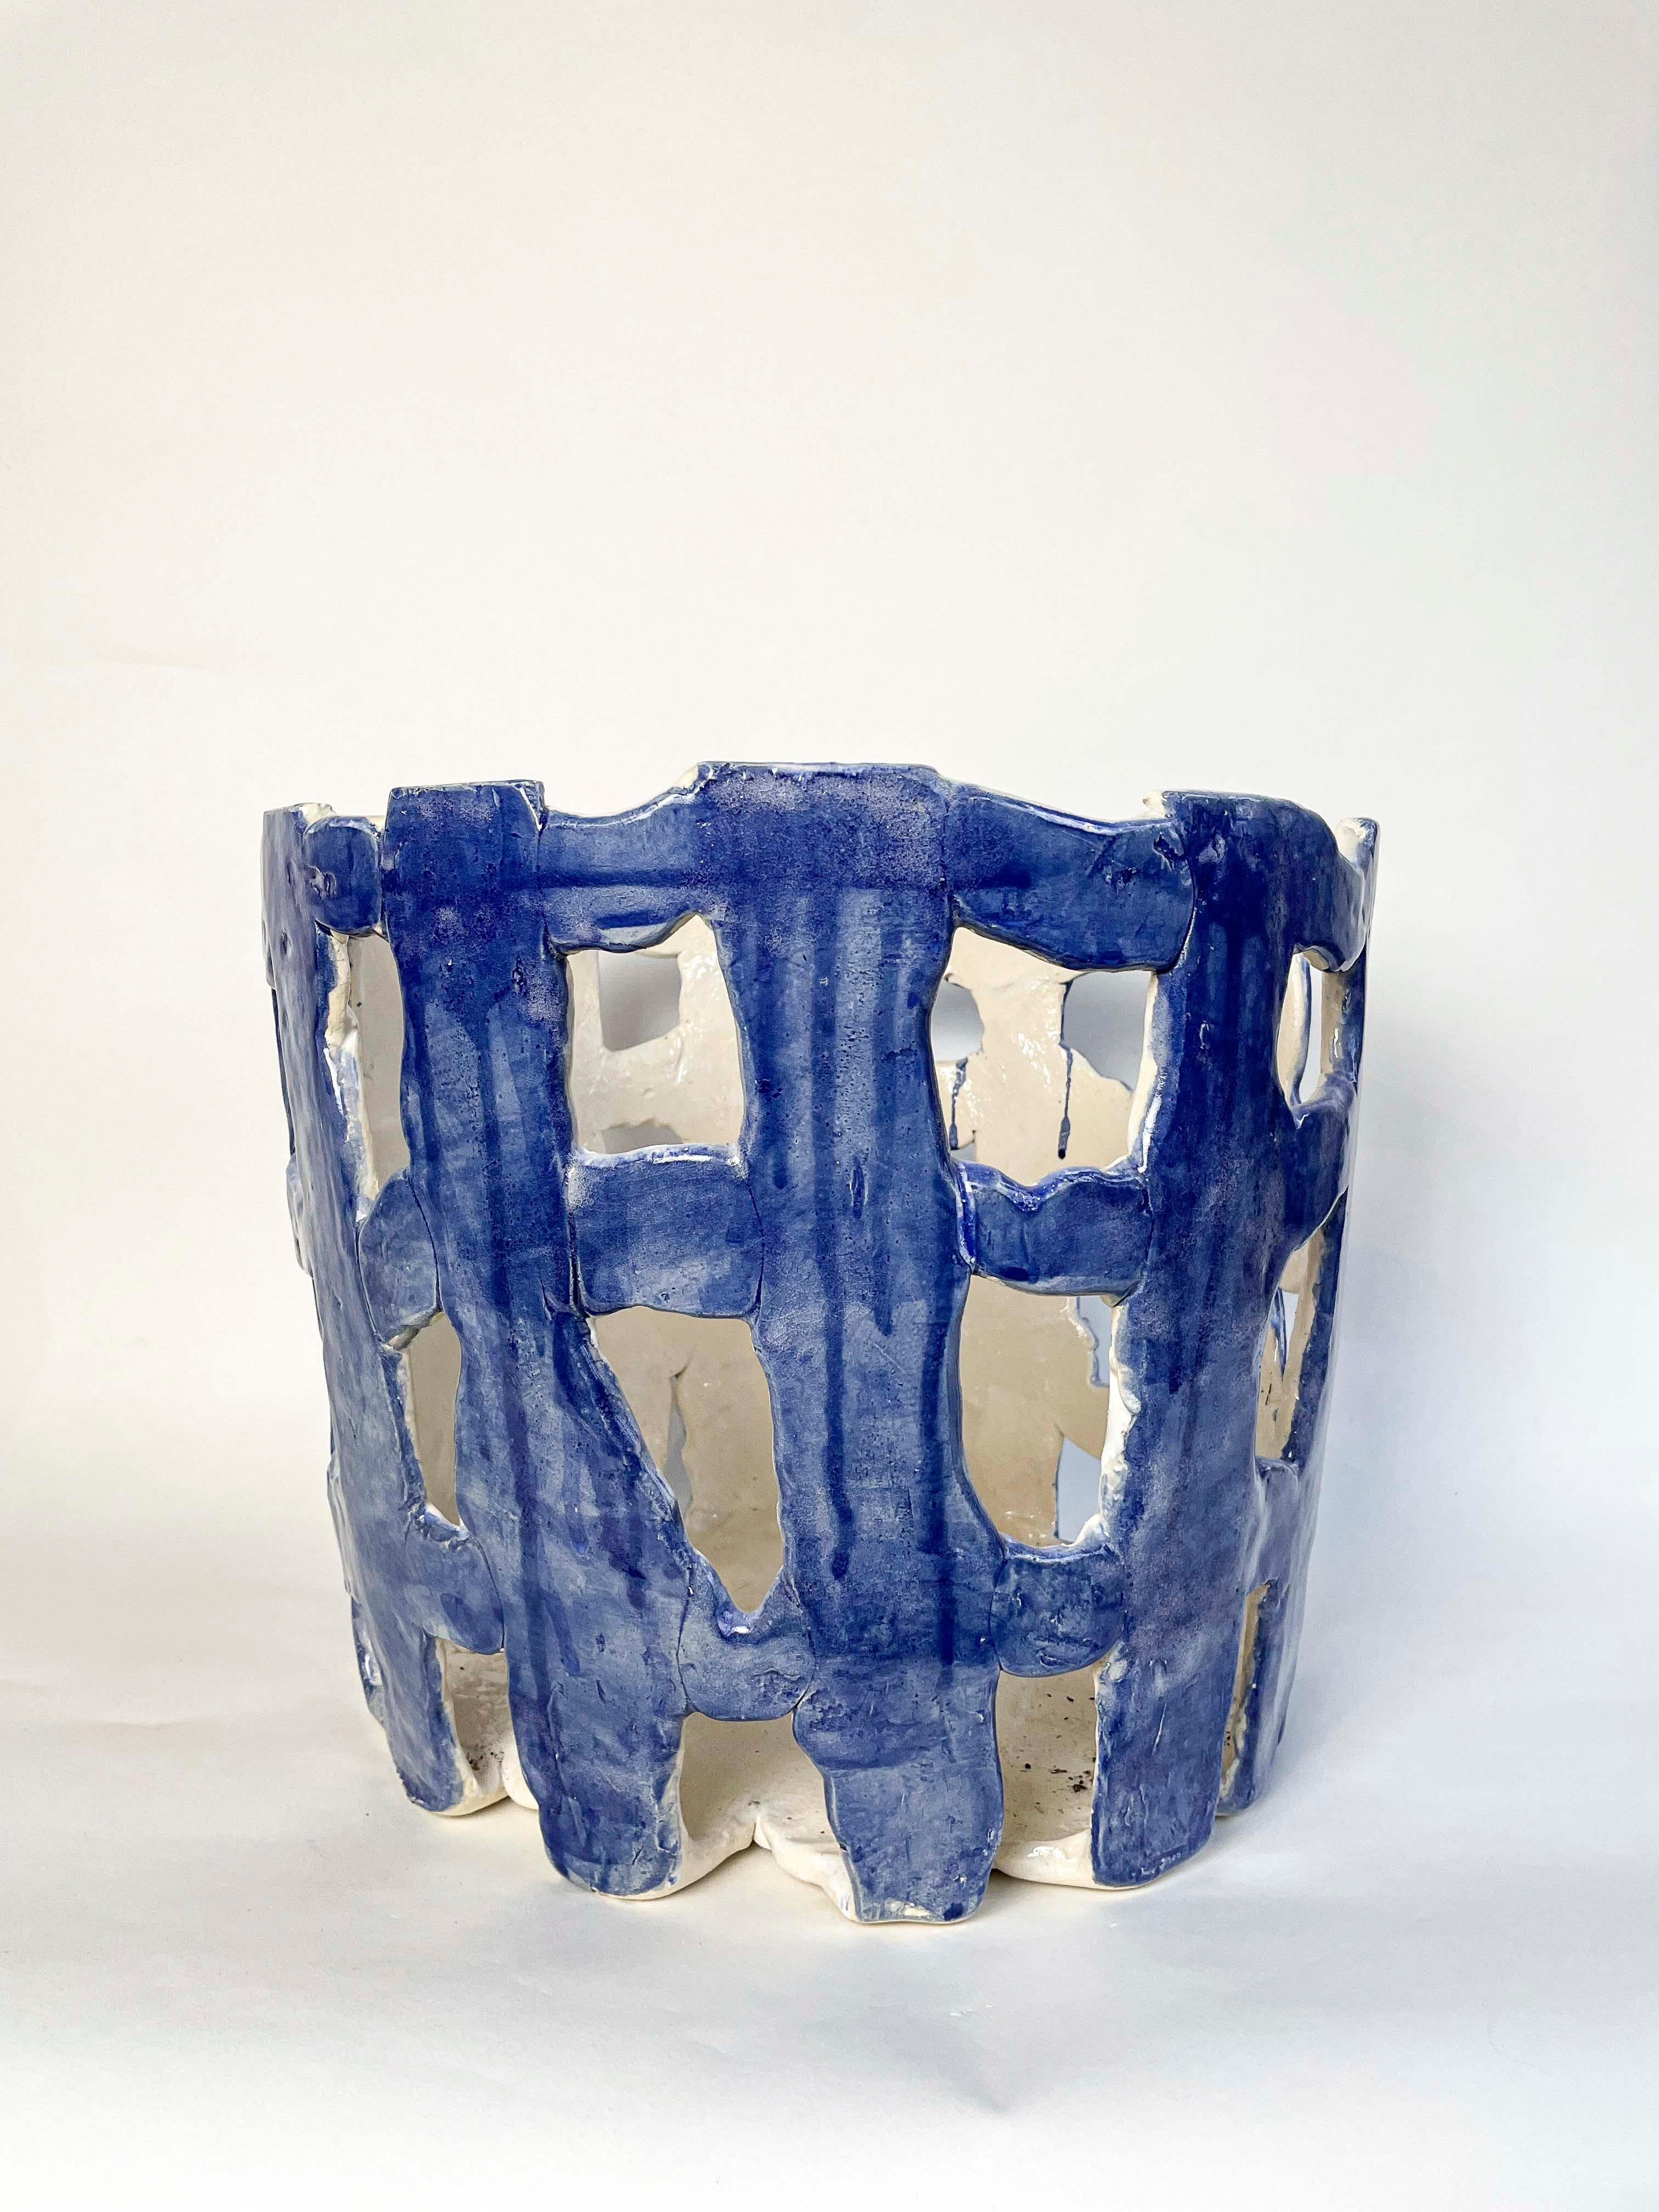 
Unser Keramikkorb - der Tantouffle cielo - ist ein Einzelstück: handgefertigt und handbemalt in einer kleinen Manufaktur in Münster, Norddeutschland. Jedes Stück von CortoMagDelft ist ein Unikat, kann aber wieder hergestellt werden, wahrscheinlich